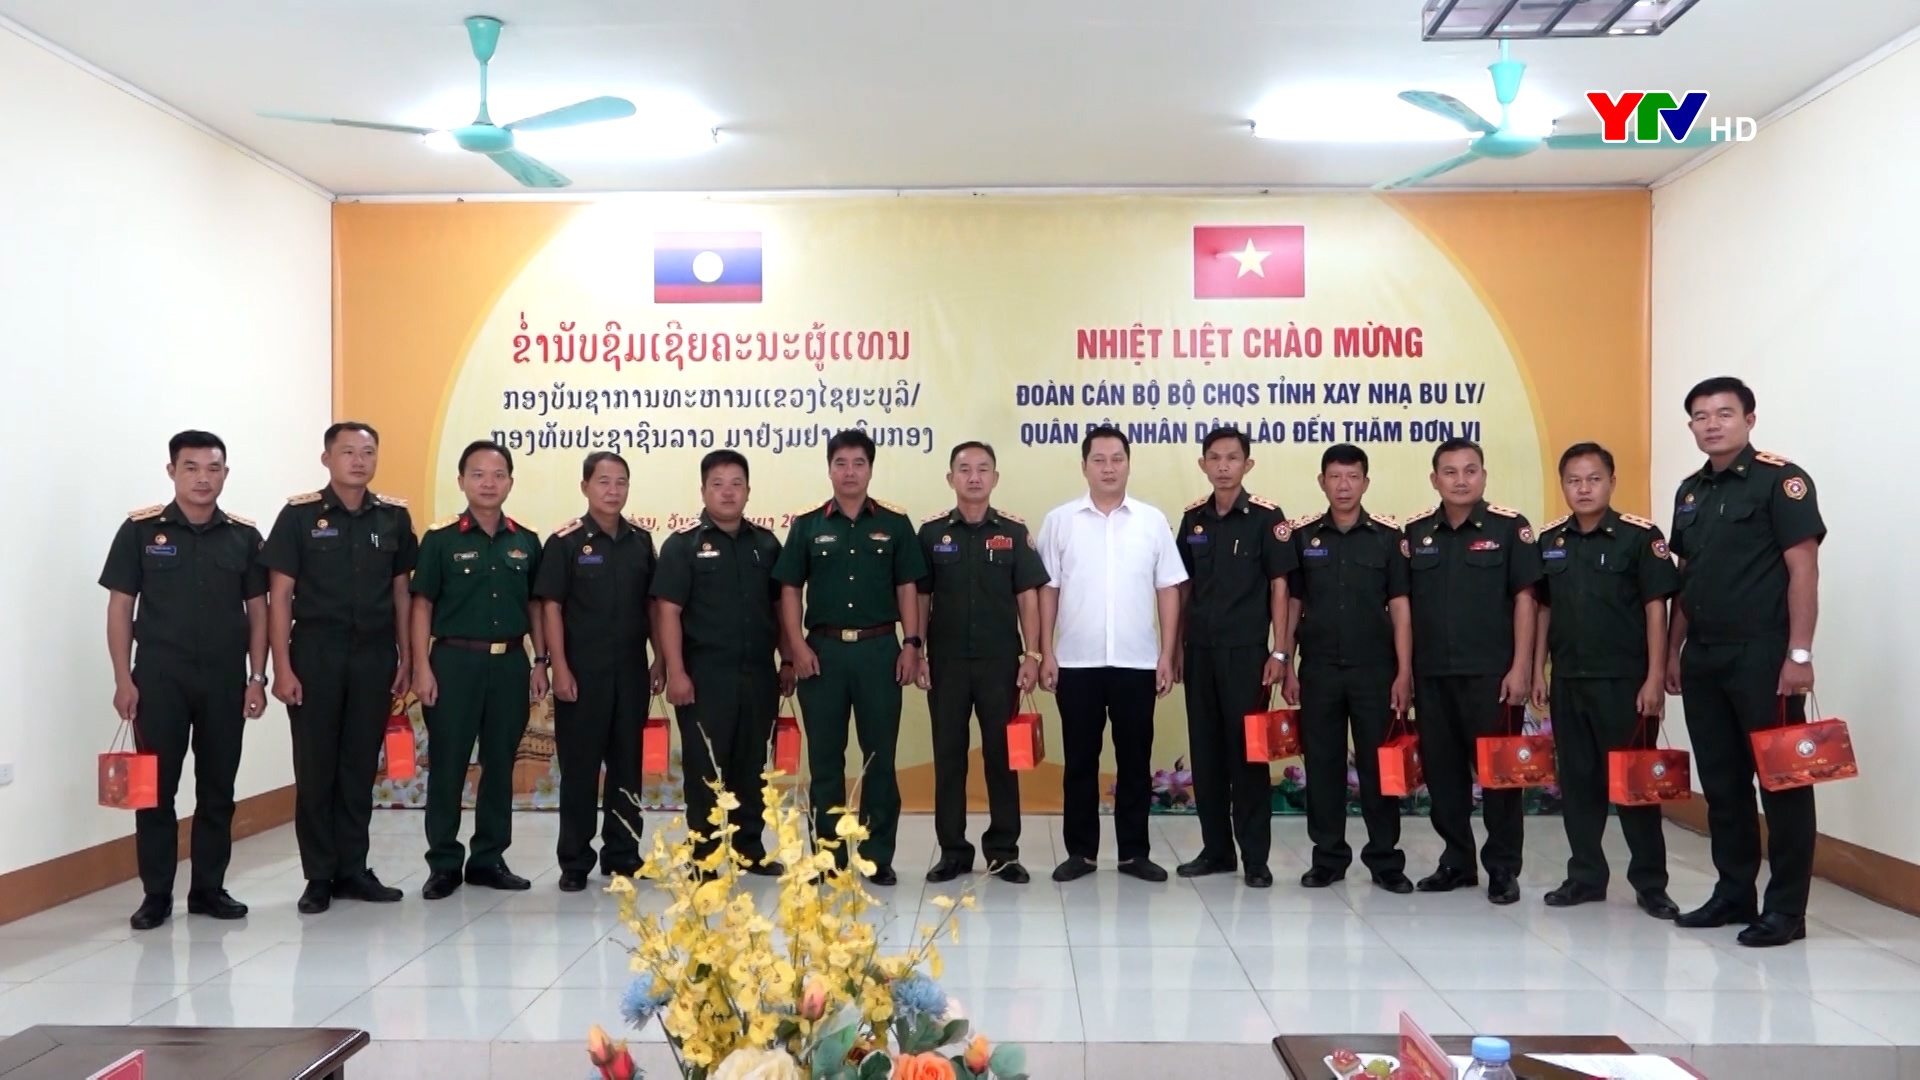 Bộ CHQS tỉnh Xay Nha Bu Ly (QĐND Lào) hội đàm và trao đổi kinh nghiệm tại Ban CHQS huyện Văn Yên